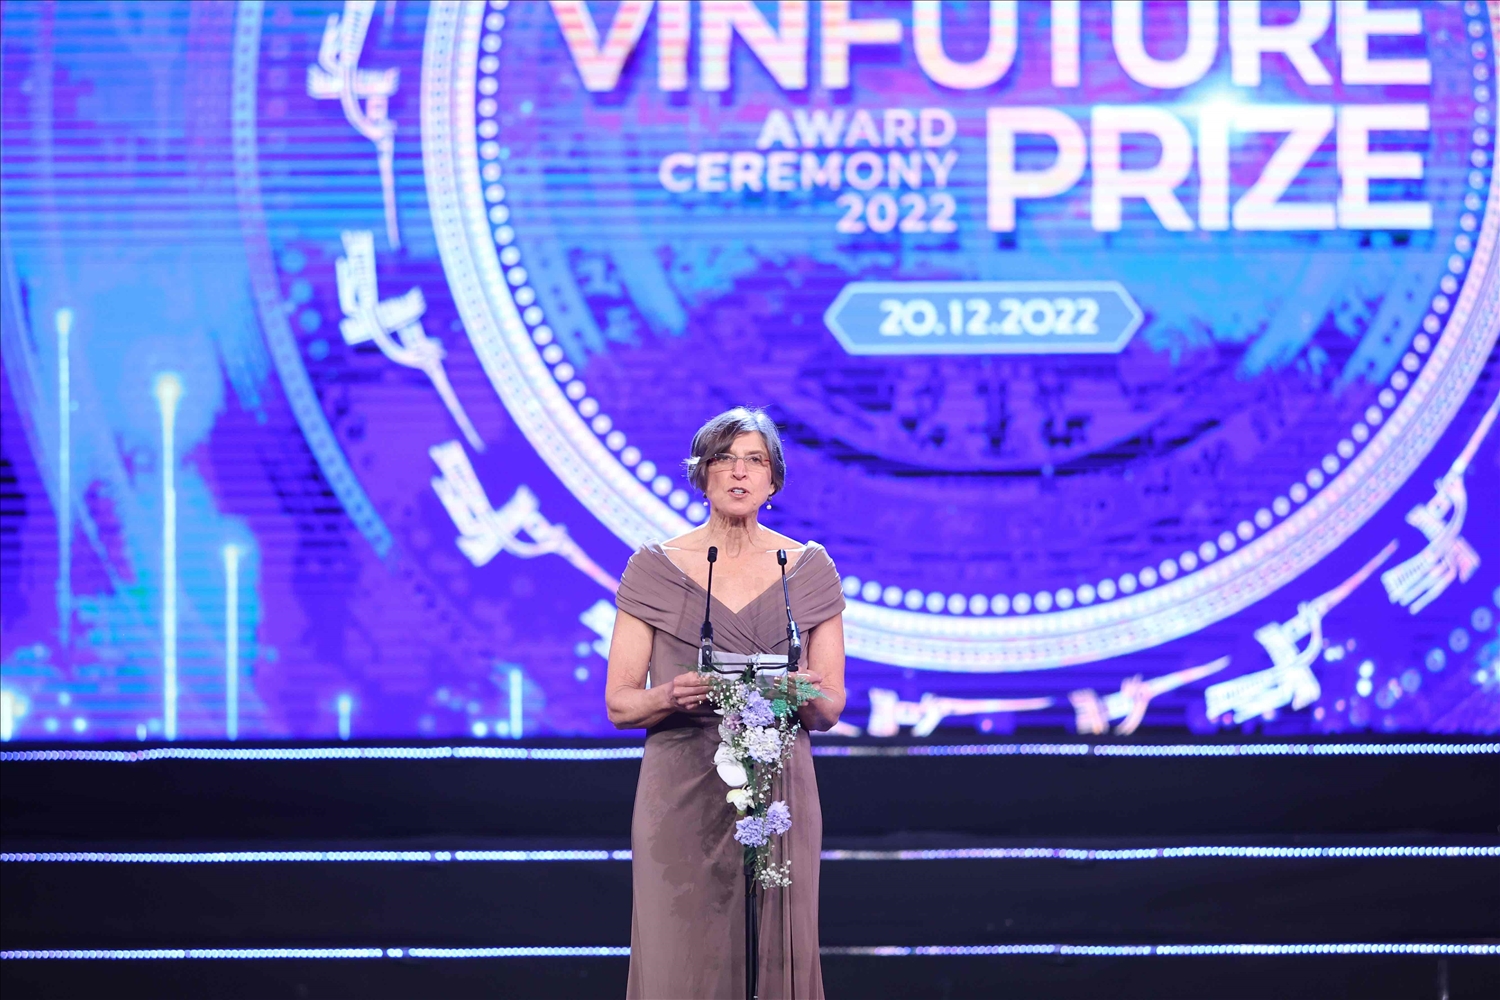 VinFuture 2022 vinh danh 4 công trình khoa học 'Hồi sinh và Tái thiết' thế giới 2